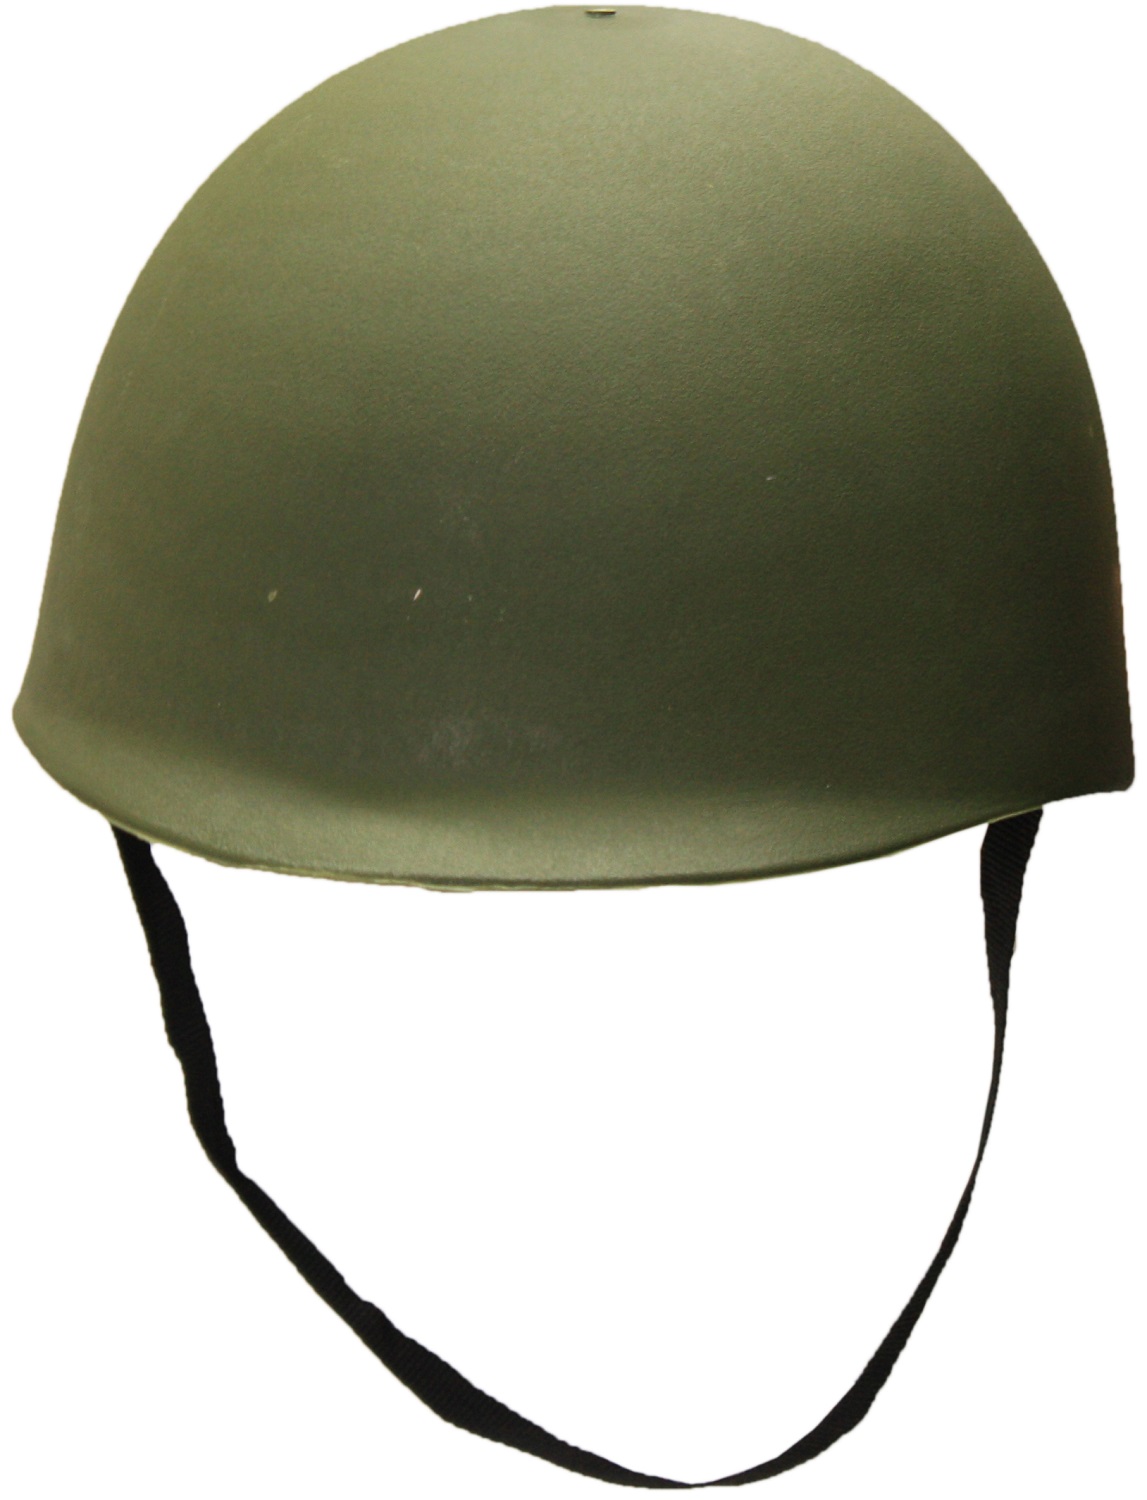 Army Helmet Drawing